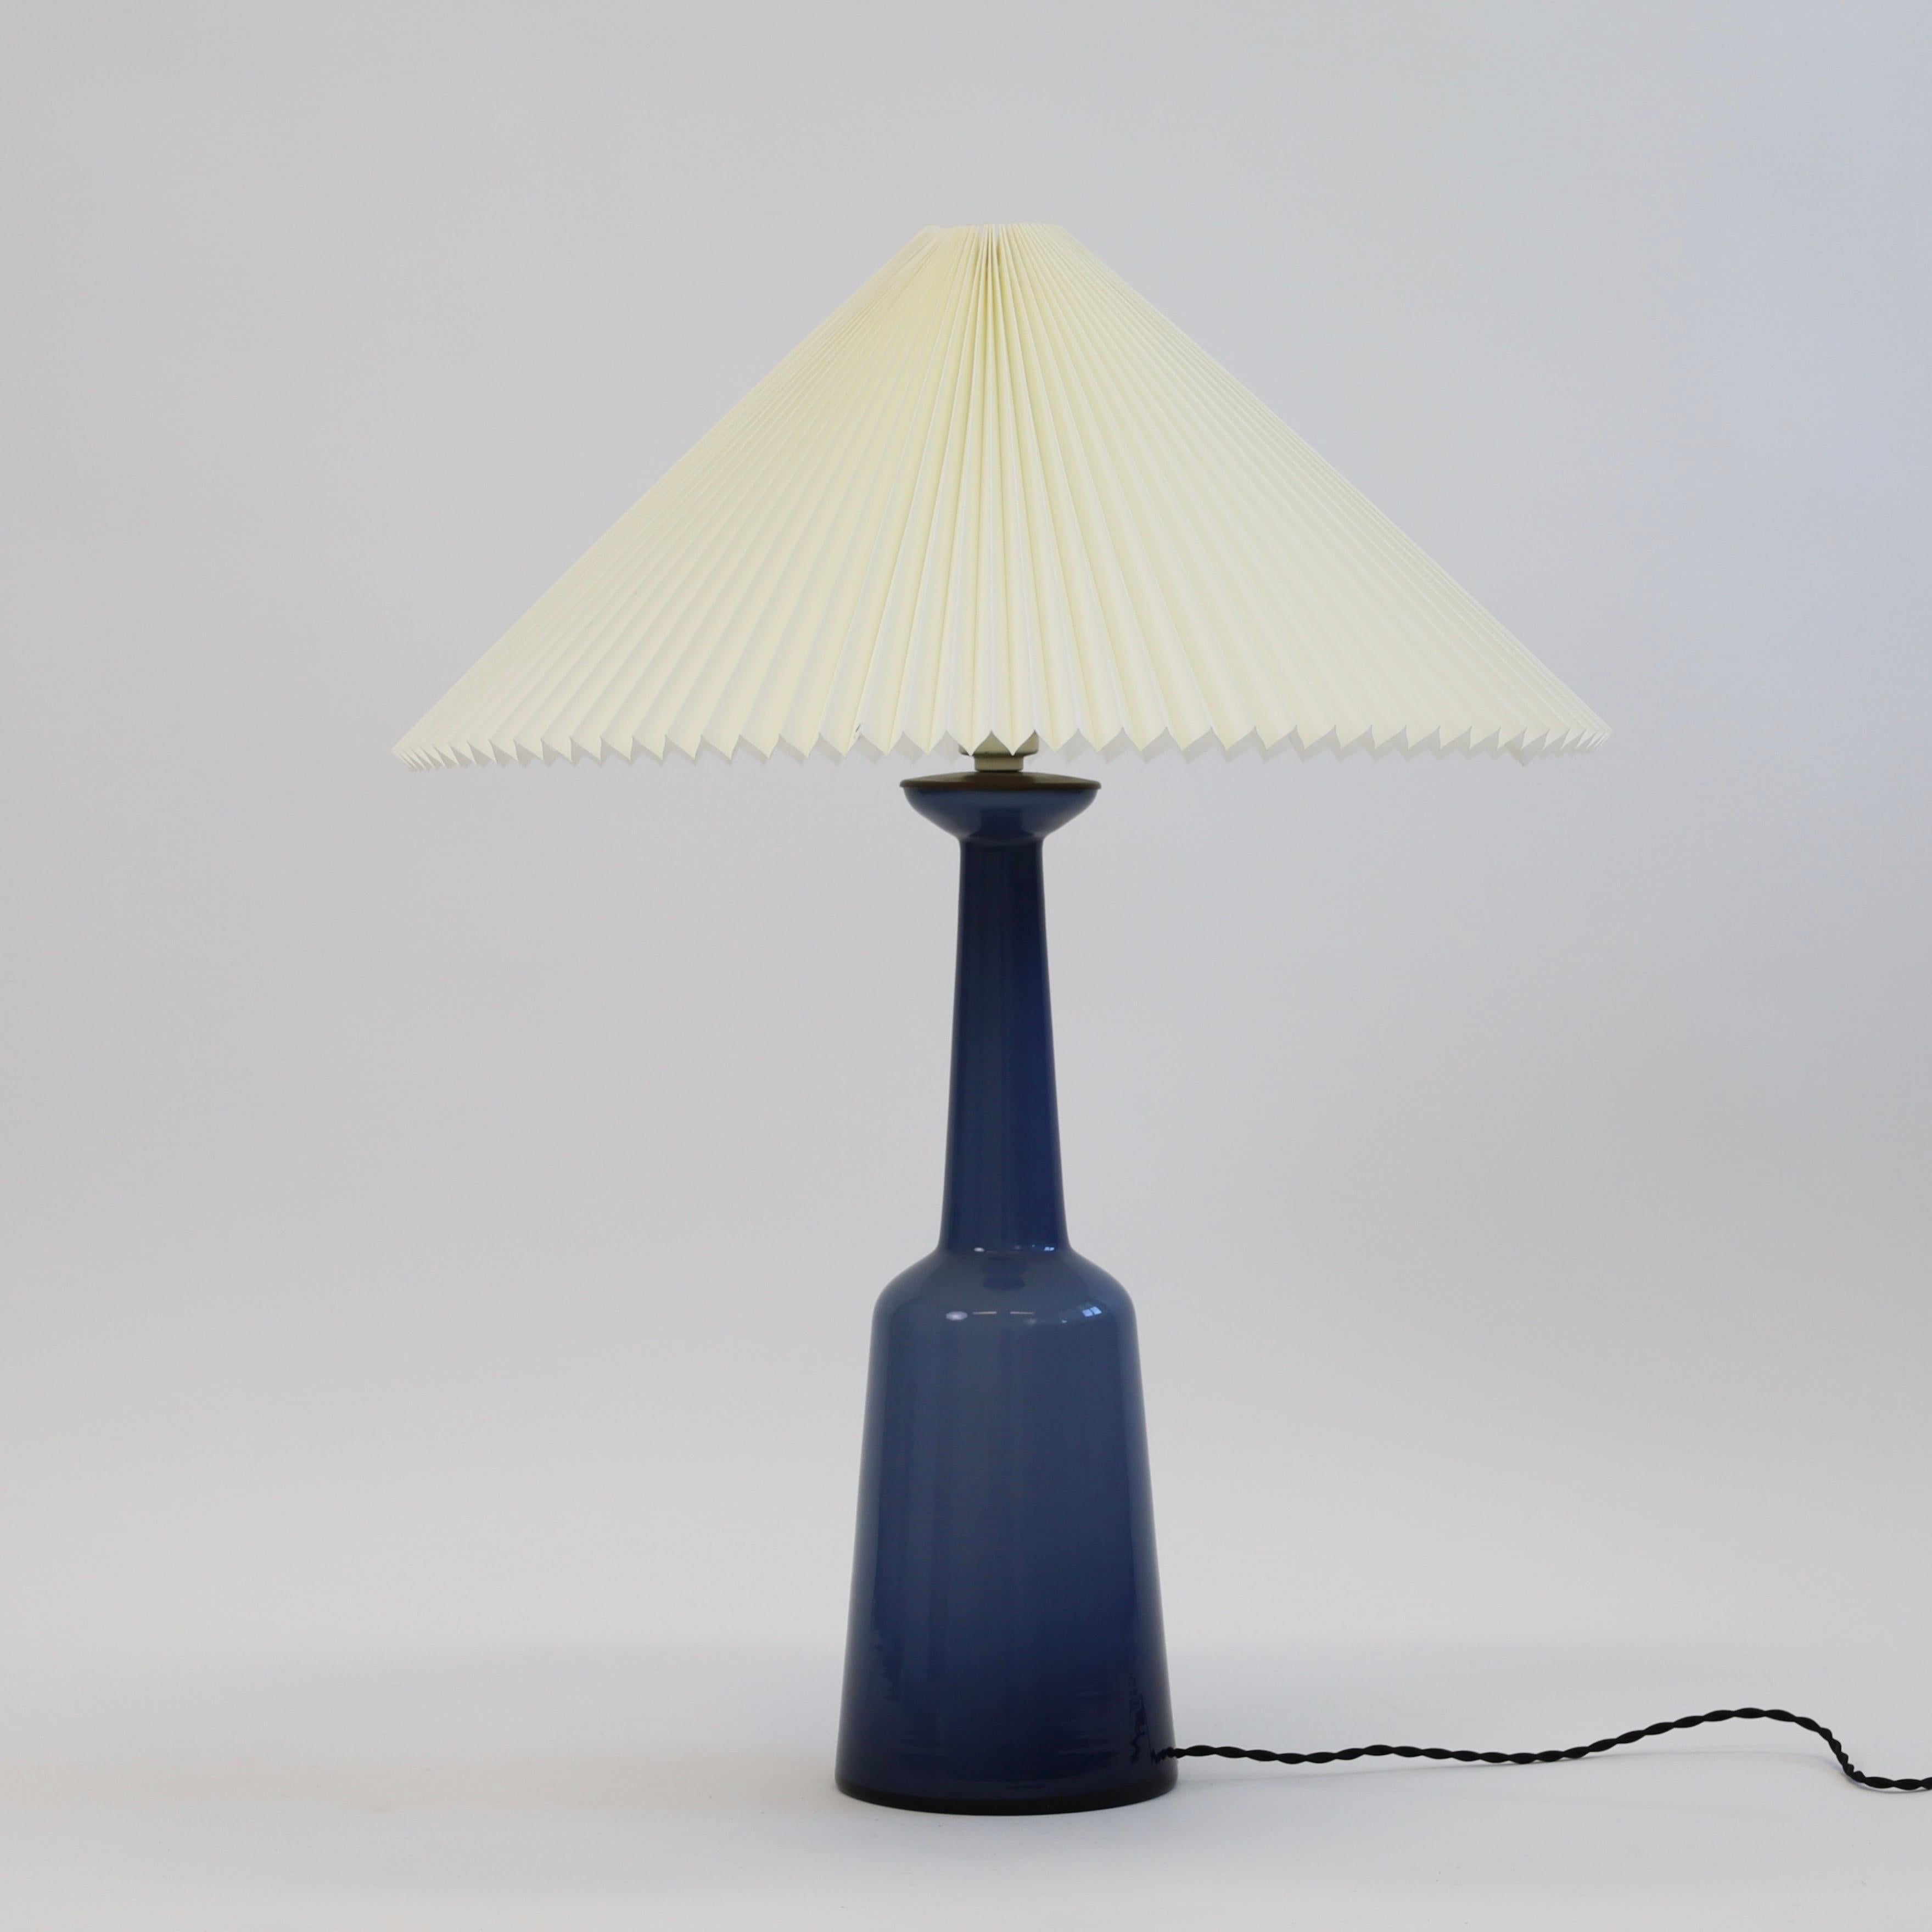 Une grande lampe de table en verre des années 1950 par Kastrup Glasvaerk - presque de la taille d'un plancher. Remarquable bleu nuit profond et une pièce qui attire l'attention pour un bel espace. 

* Lampe de table en verre bleu avec un plateau en